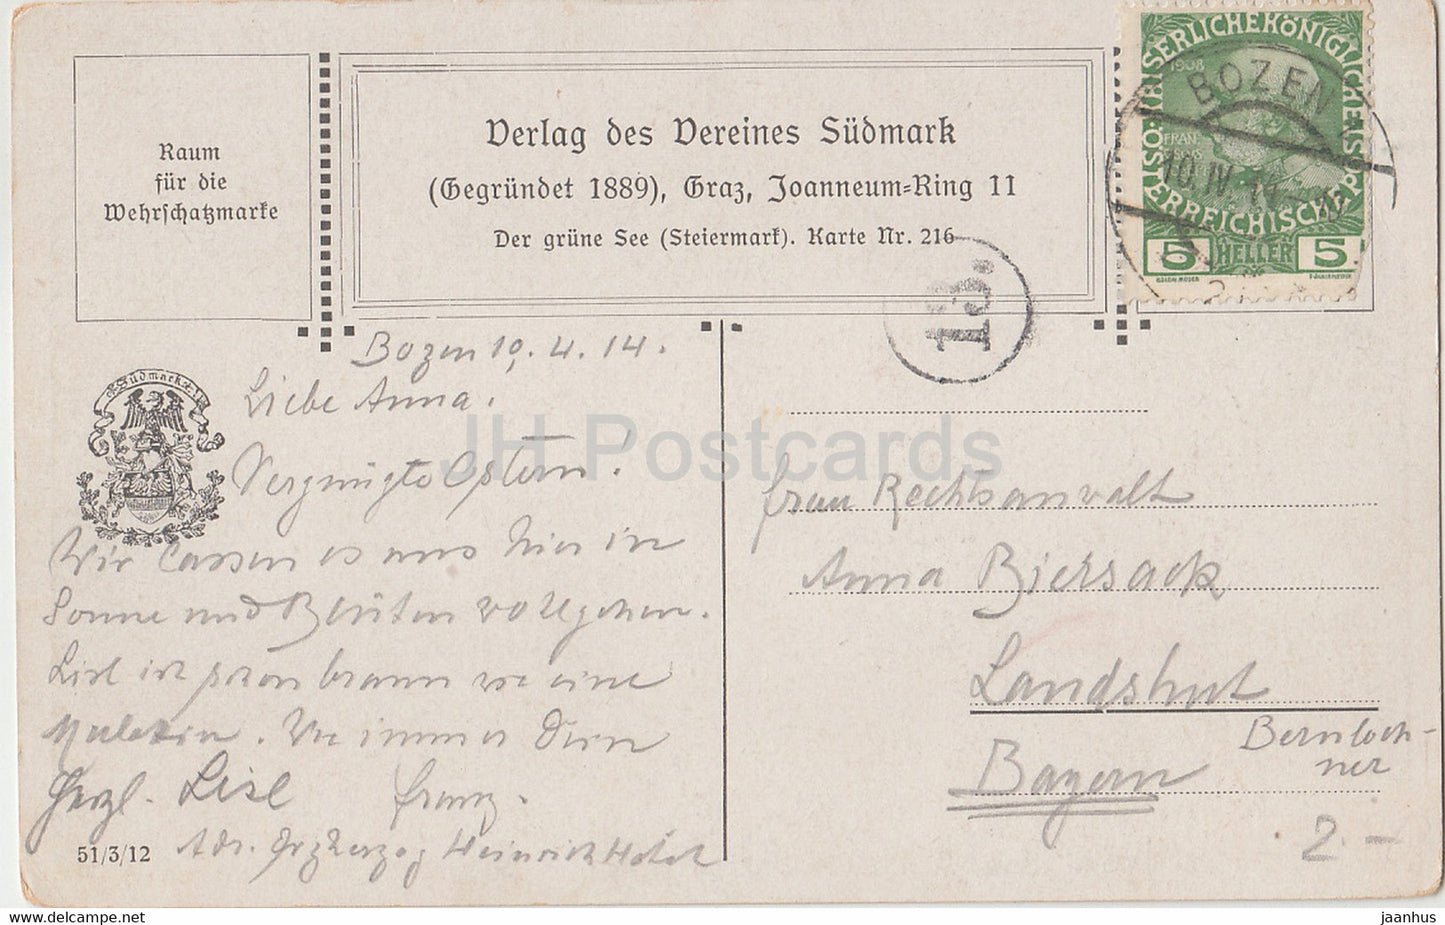 Der Grüne See - Steiermark - Illustration - Vereines Südmark - 216 - alte Postkarte - 1914 - Österreich - gebraucht